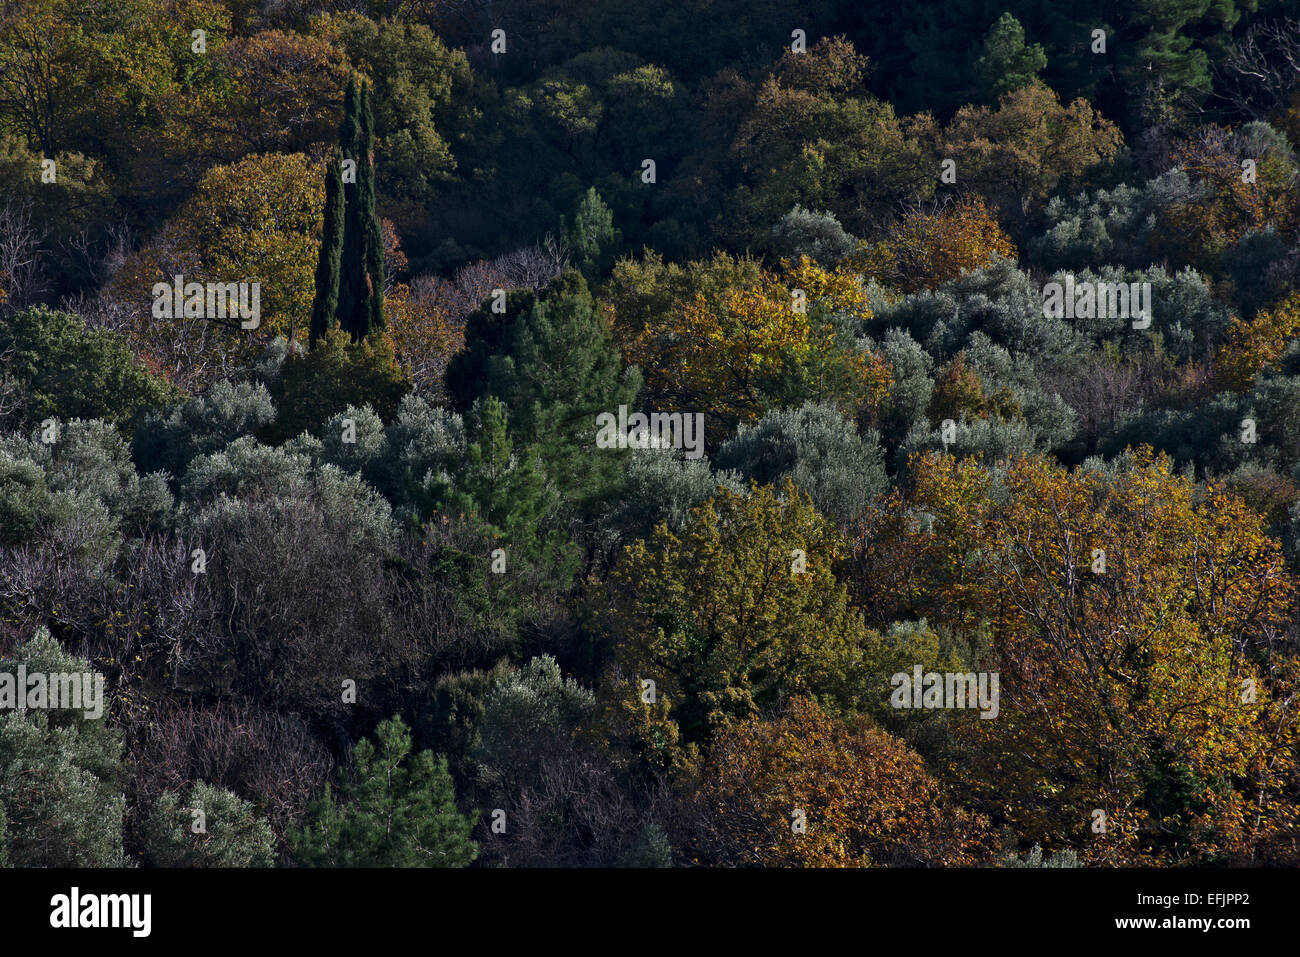 Forêt d'oliviers, cyprès et autres arbres à Lesbos, Grèce, en automne Banque D'Images